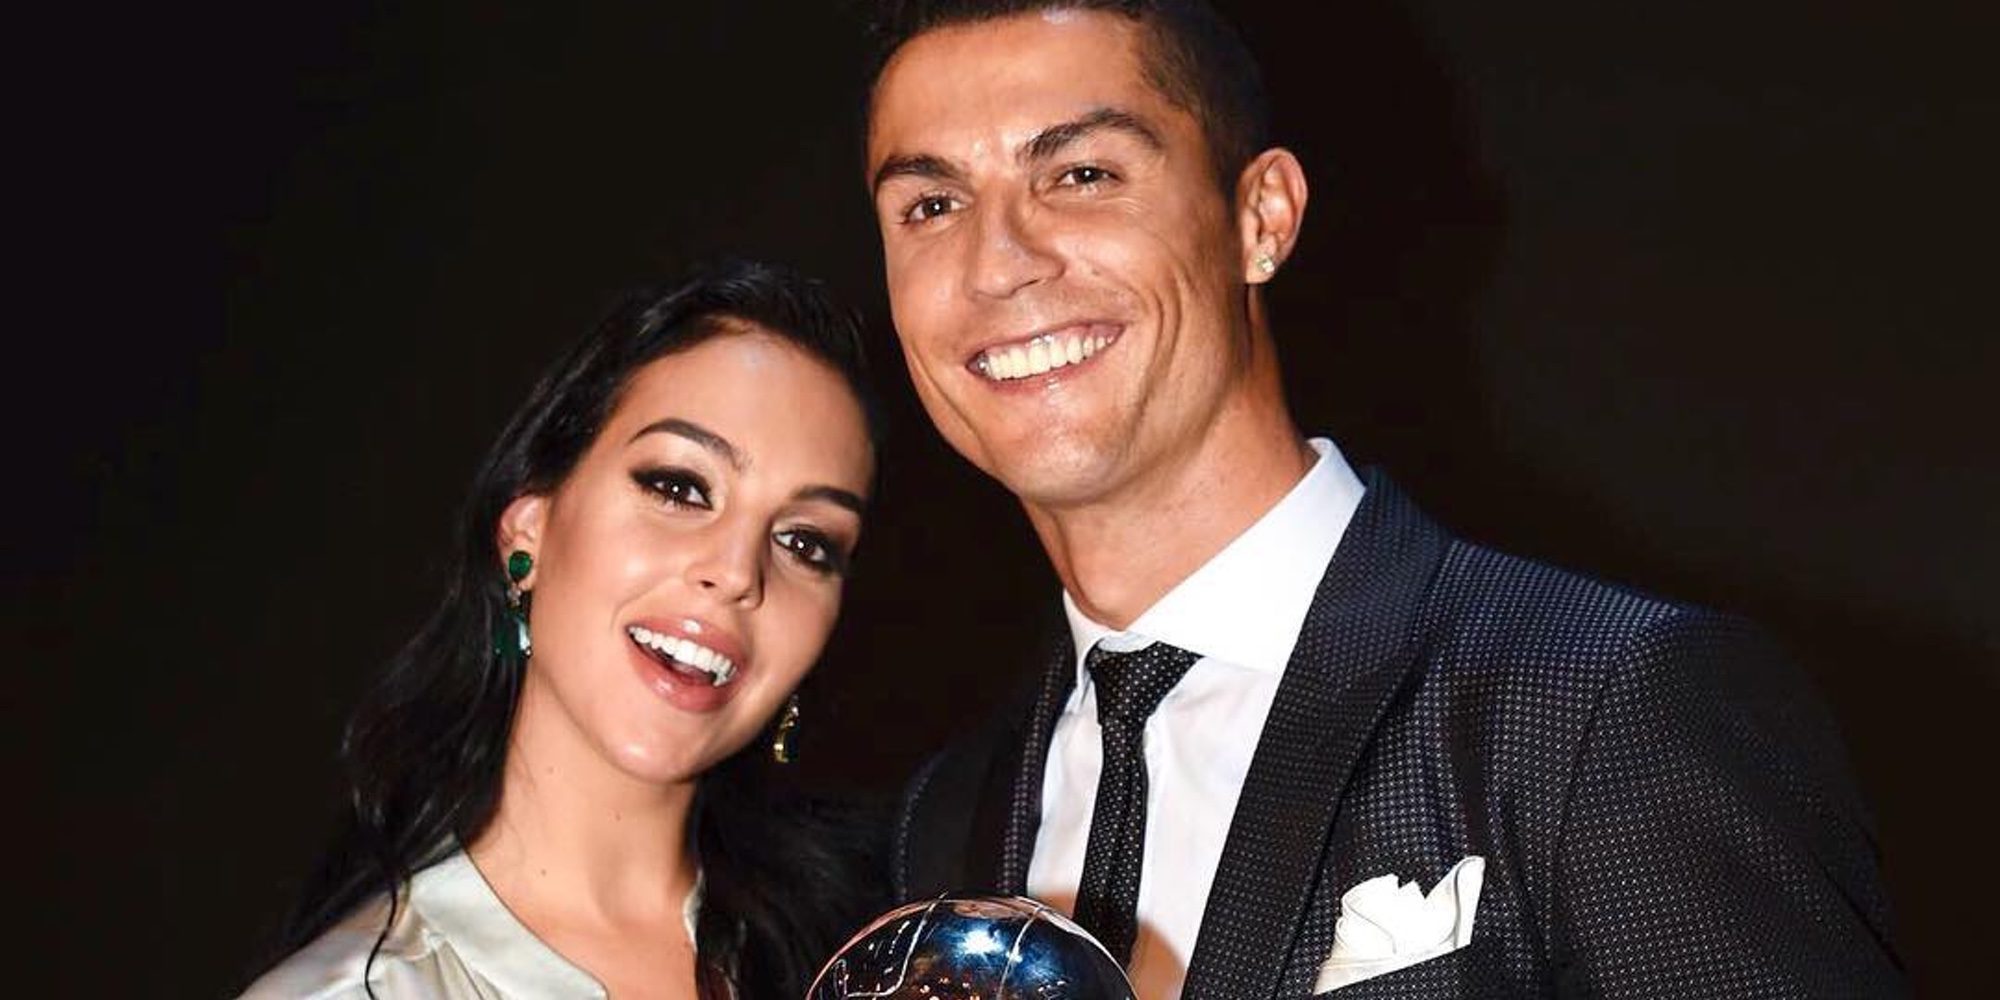 El mensaje de amor de Georgina Rodríguez a Cristiano Ronaldo con referencia a su embarazo: "Estaré a tu lado"